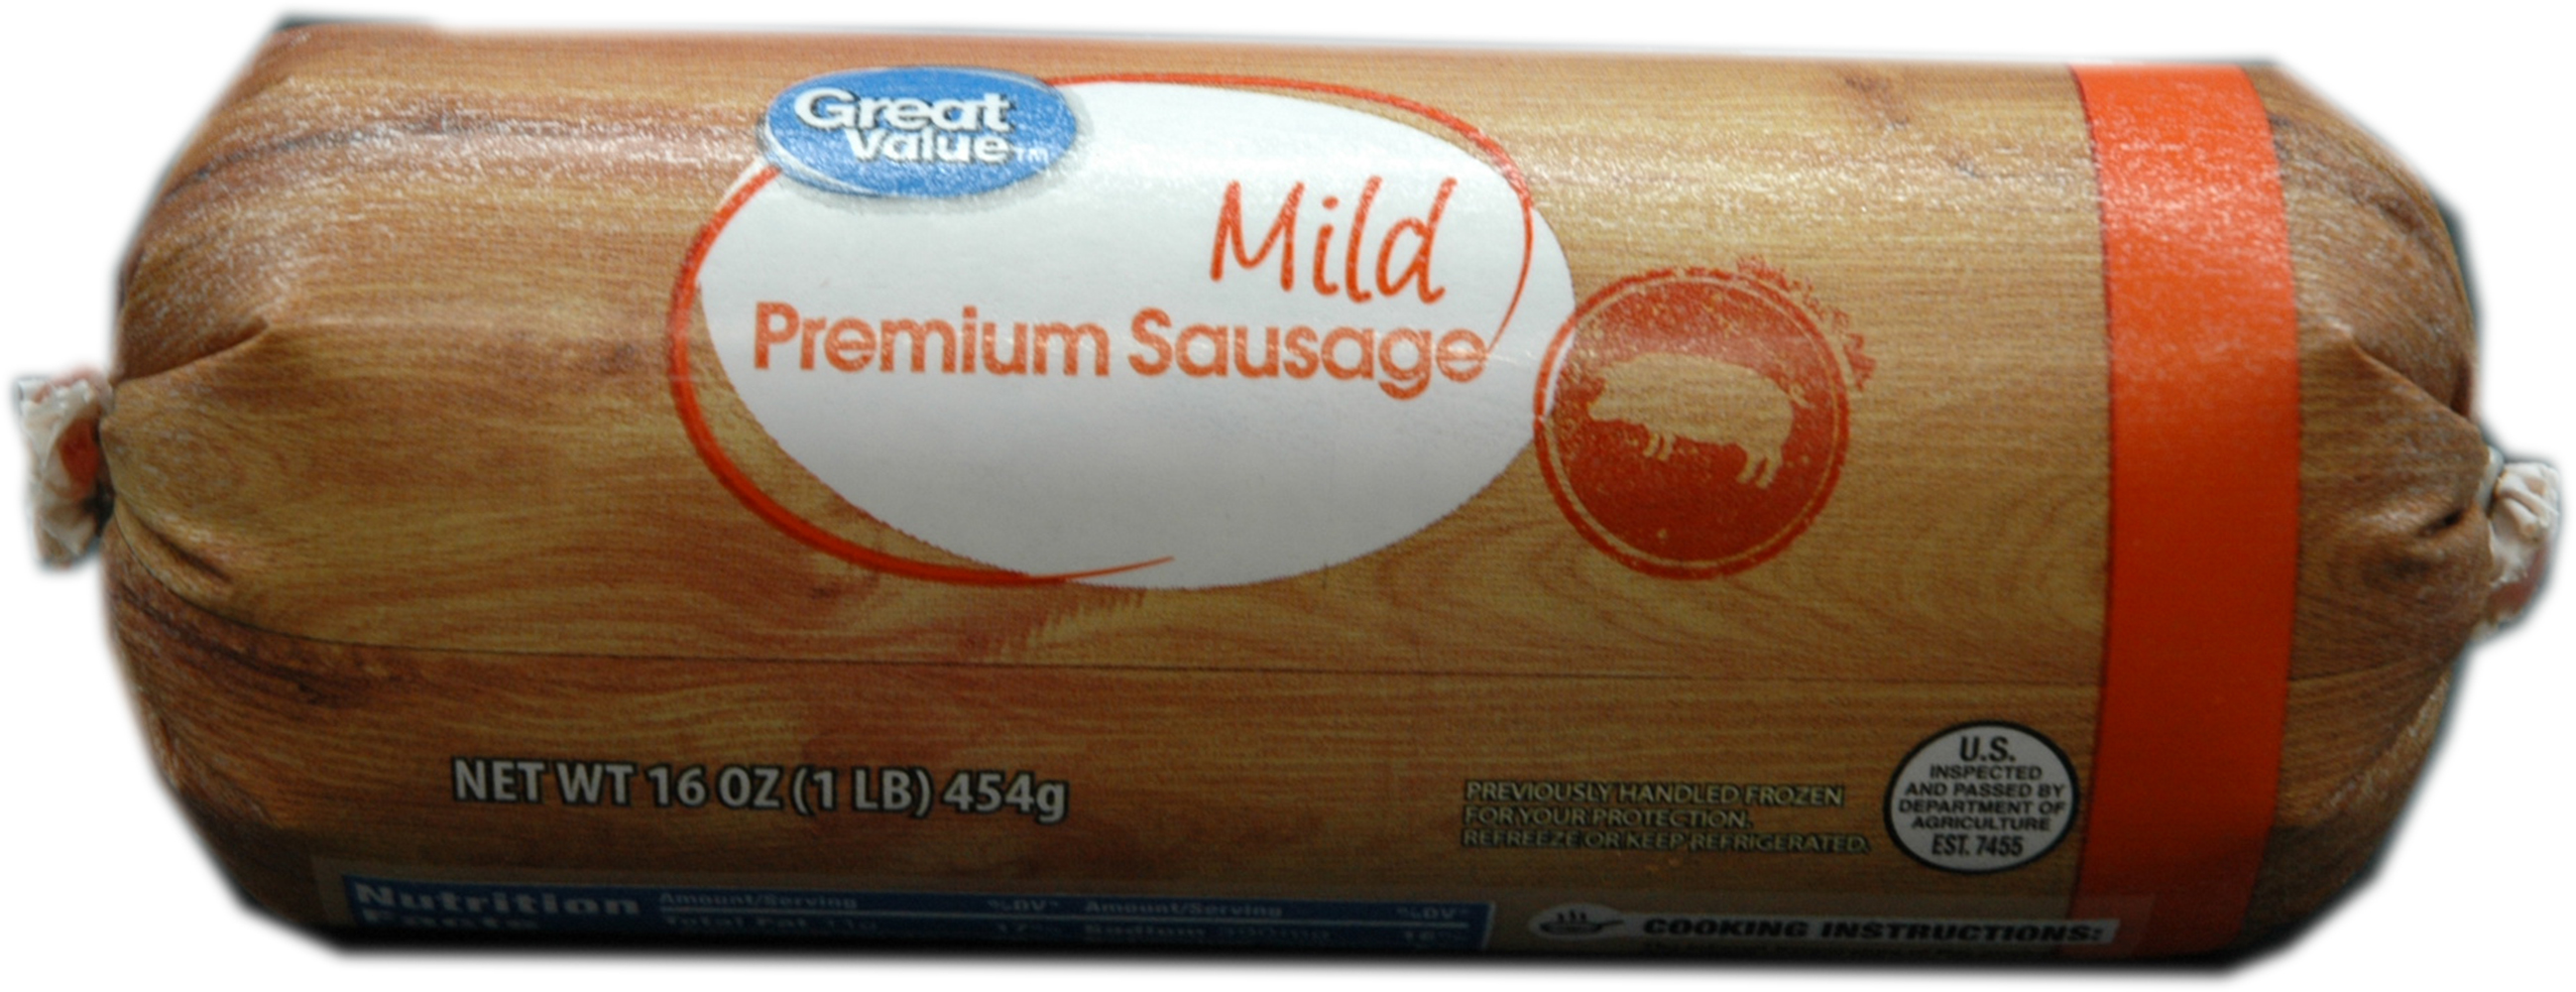 Great Value Mild Pork Sausage, 16 Oz. Image